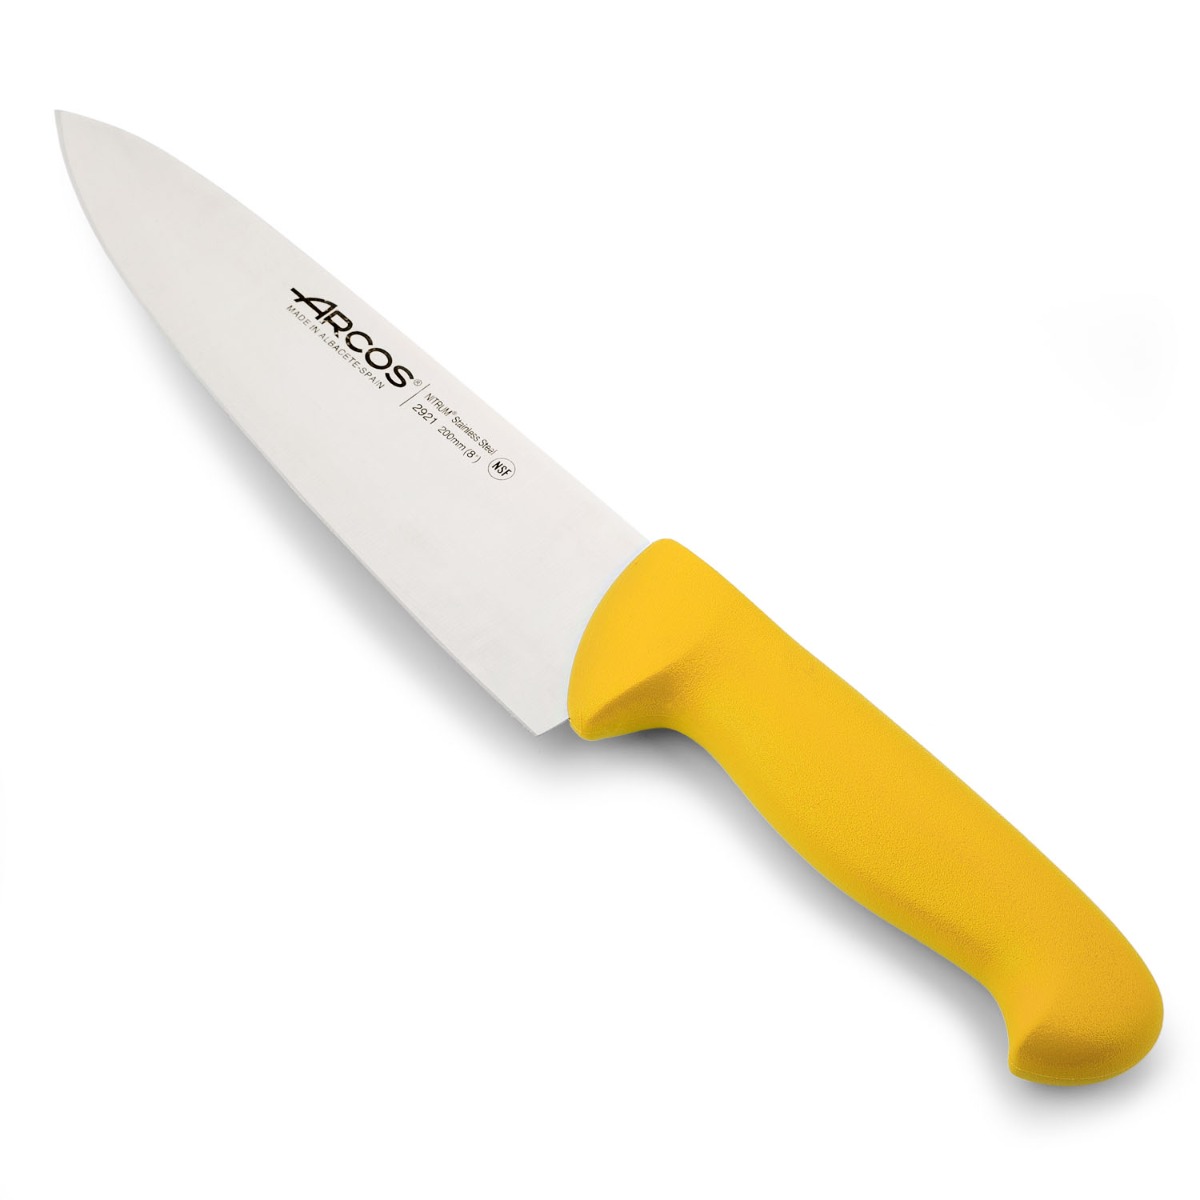 Arcos - Arcos Serie 2900 - Cuchillo Cocinero - Hoja de Acero Inoxidable NITRUM de 200 mm - Mango inyectado en Polipropileno Color amarillo